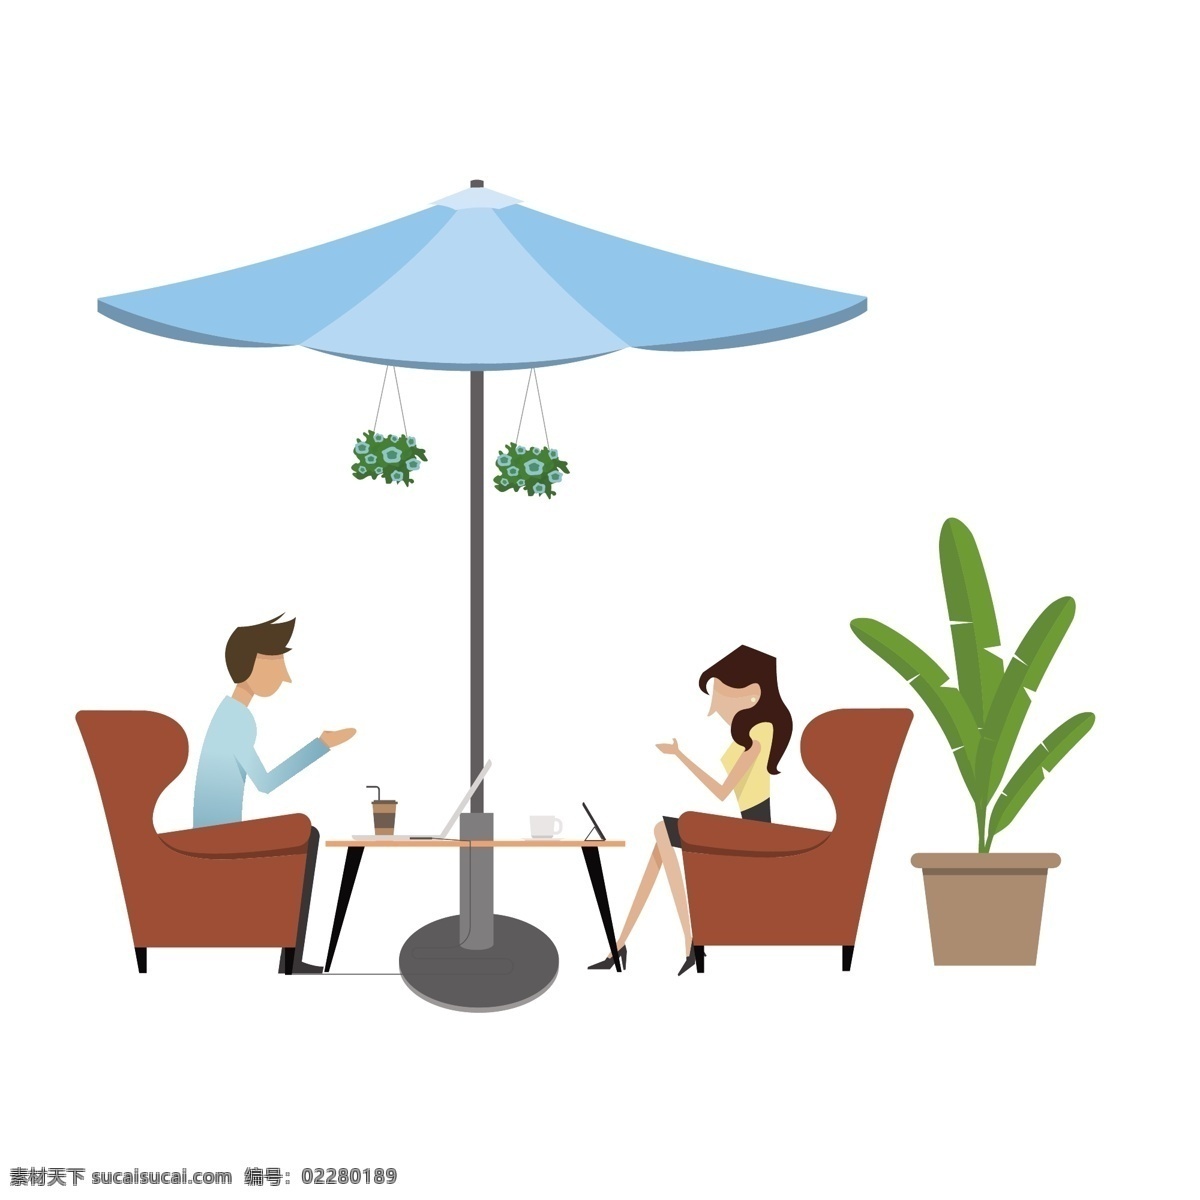 卡通 喝 咖啡 男女 矢量 咖啡男女 喝咖啡 室外 室外餐饮 约会 约会男女 晴伞 植物 绿色盆栽 浪漫男女